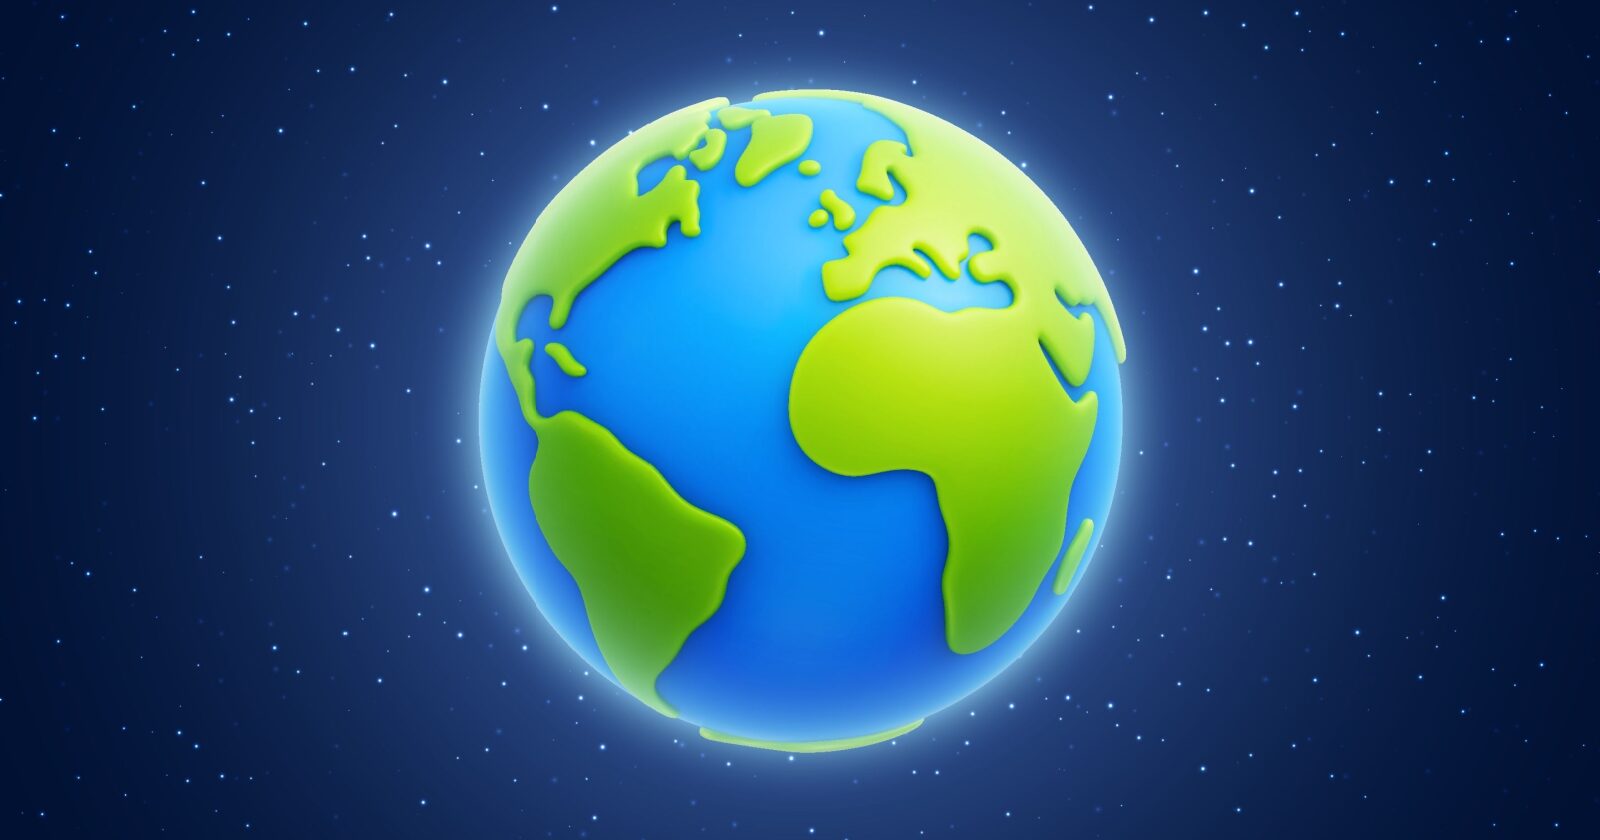 Alertes de crise environnementale de Google : Pleins feux sur le Jour de la Terre